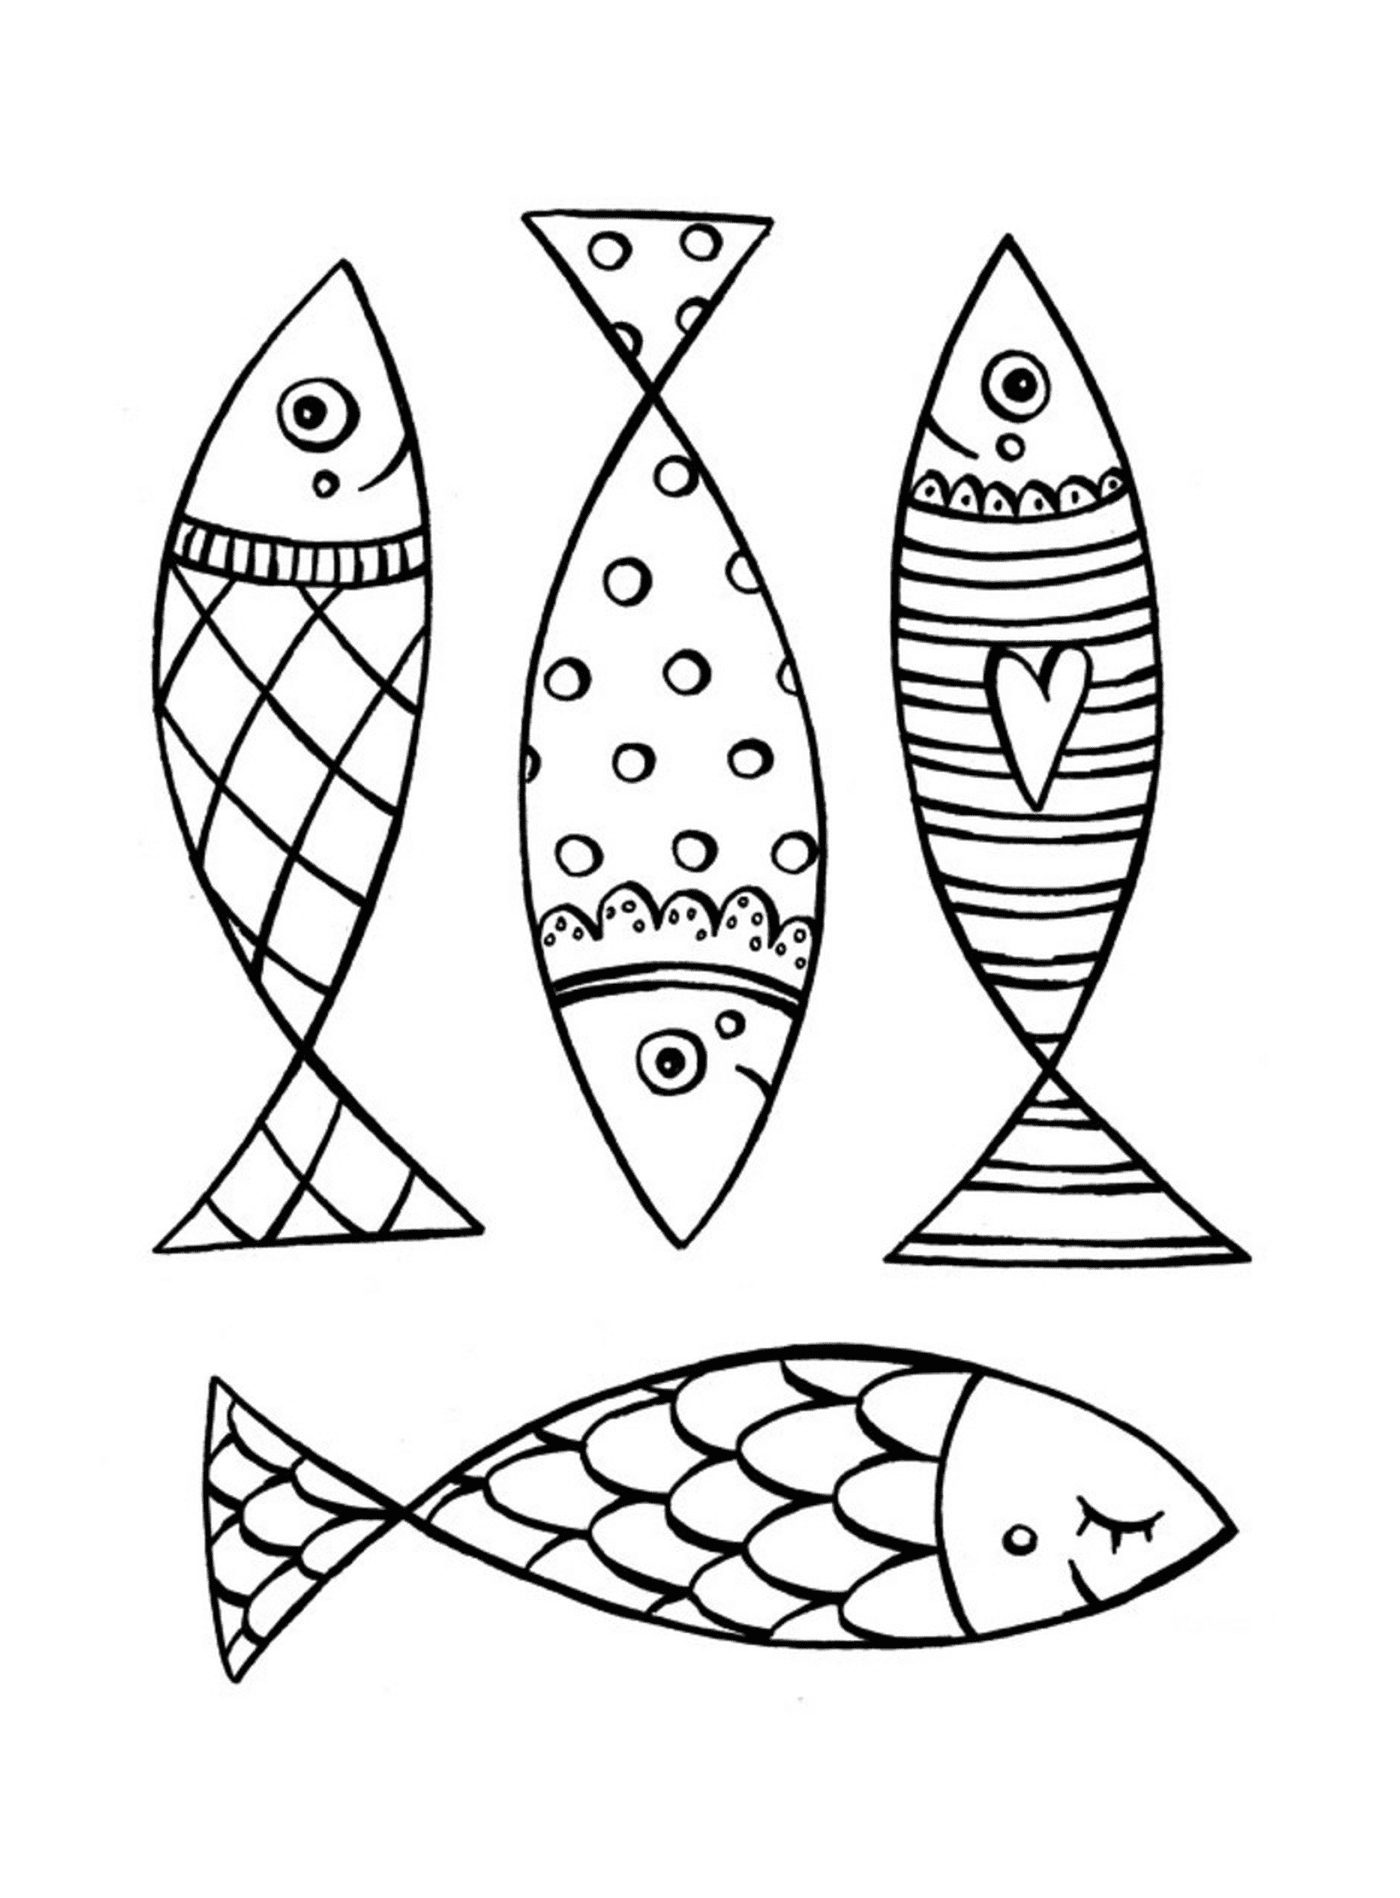  Grande aprile pesce con modelli unici 